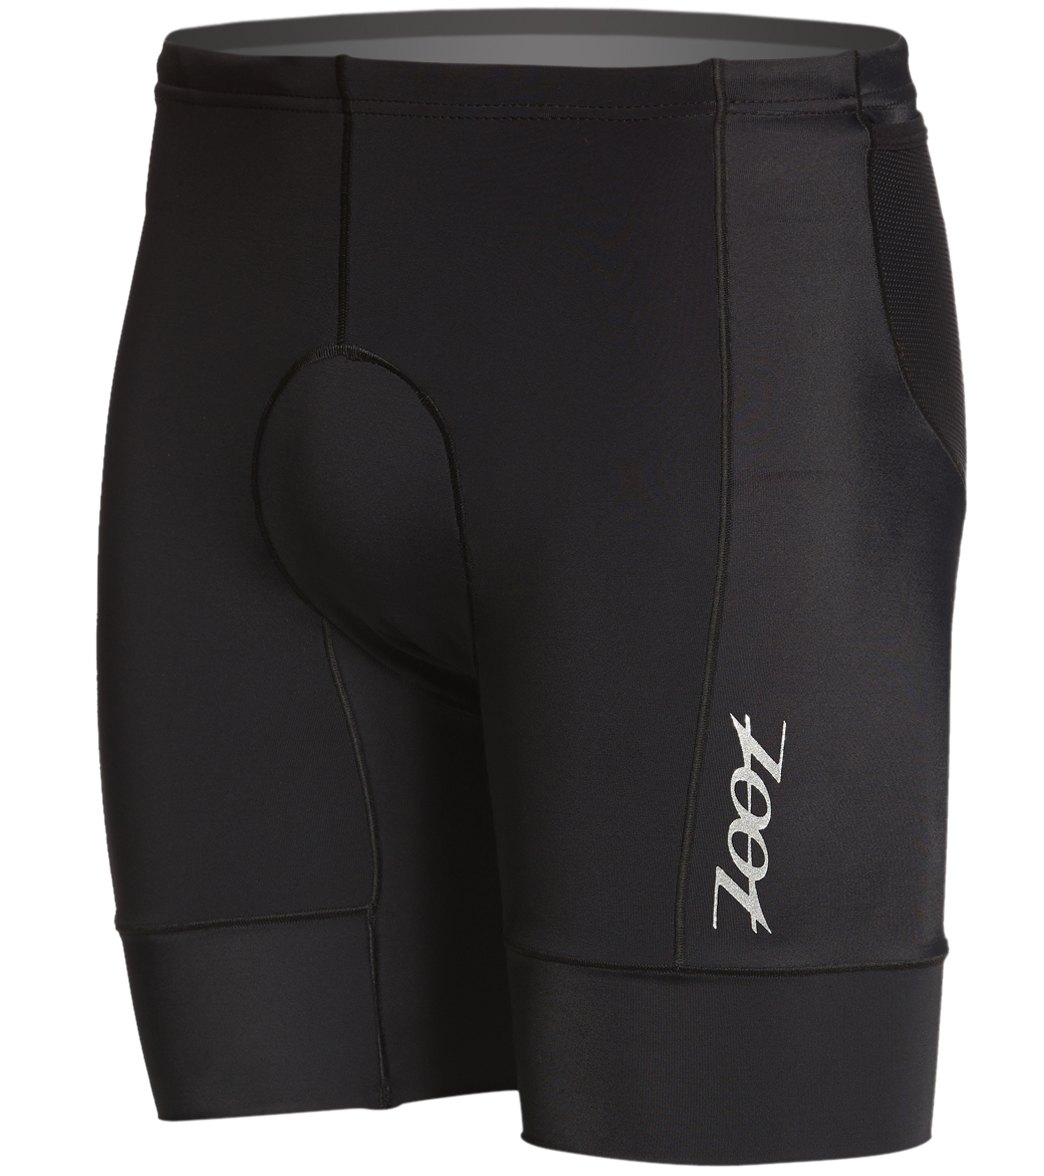 Zoot Men's Core Tri 7 Inch Short - Black Xxl - Swimoutlet.com